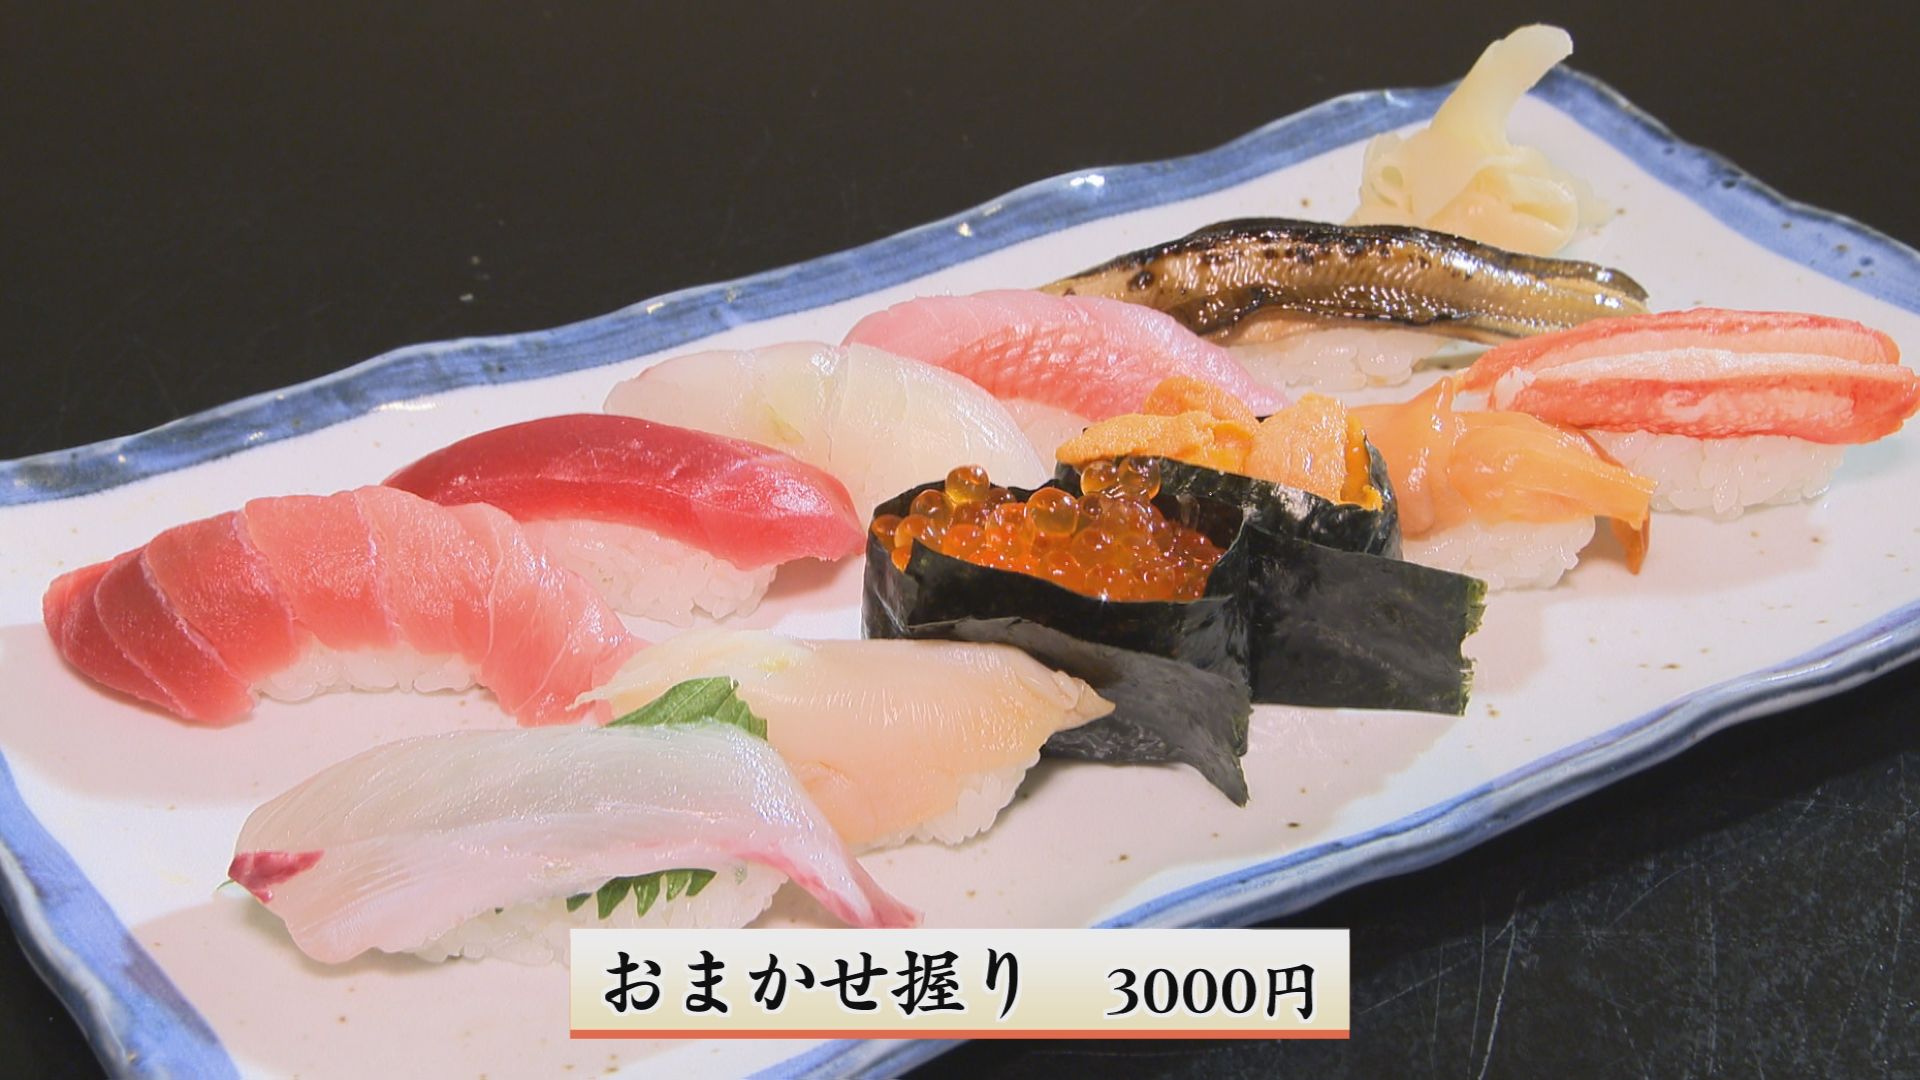 握り寿司は1000円、2000円、3000円